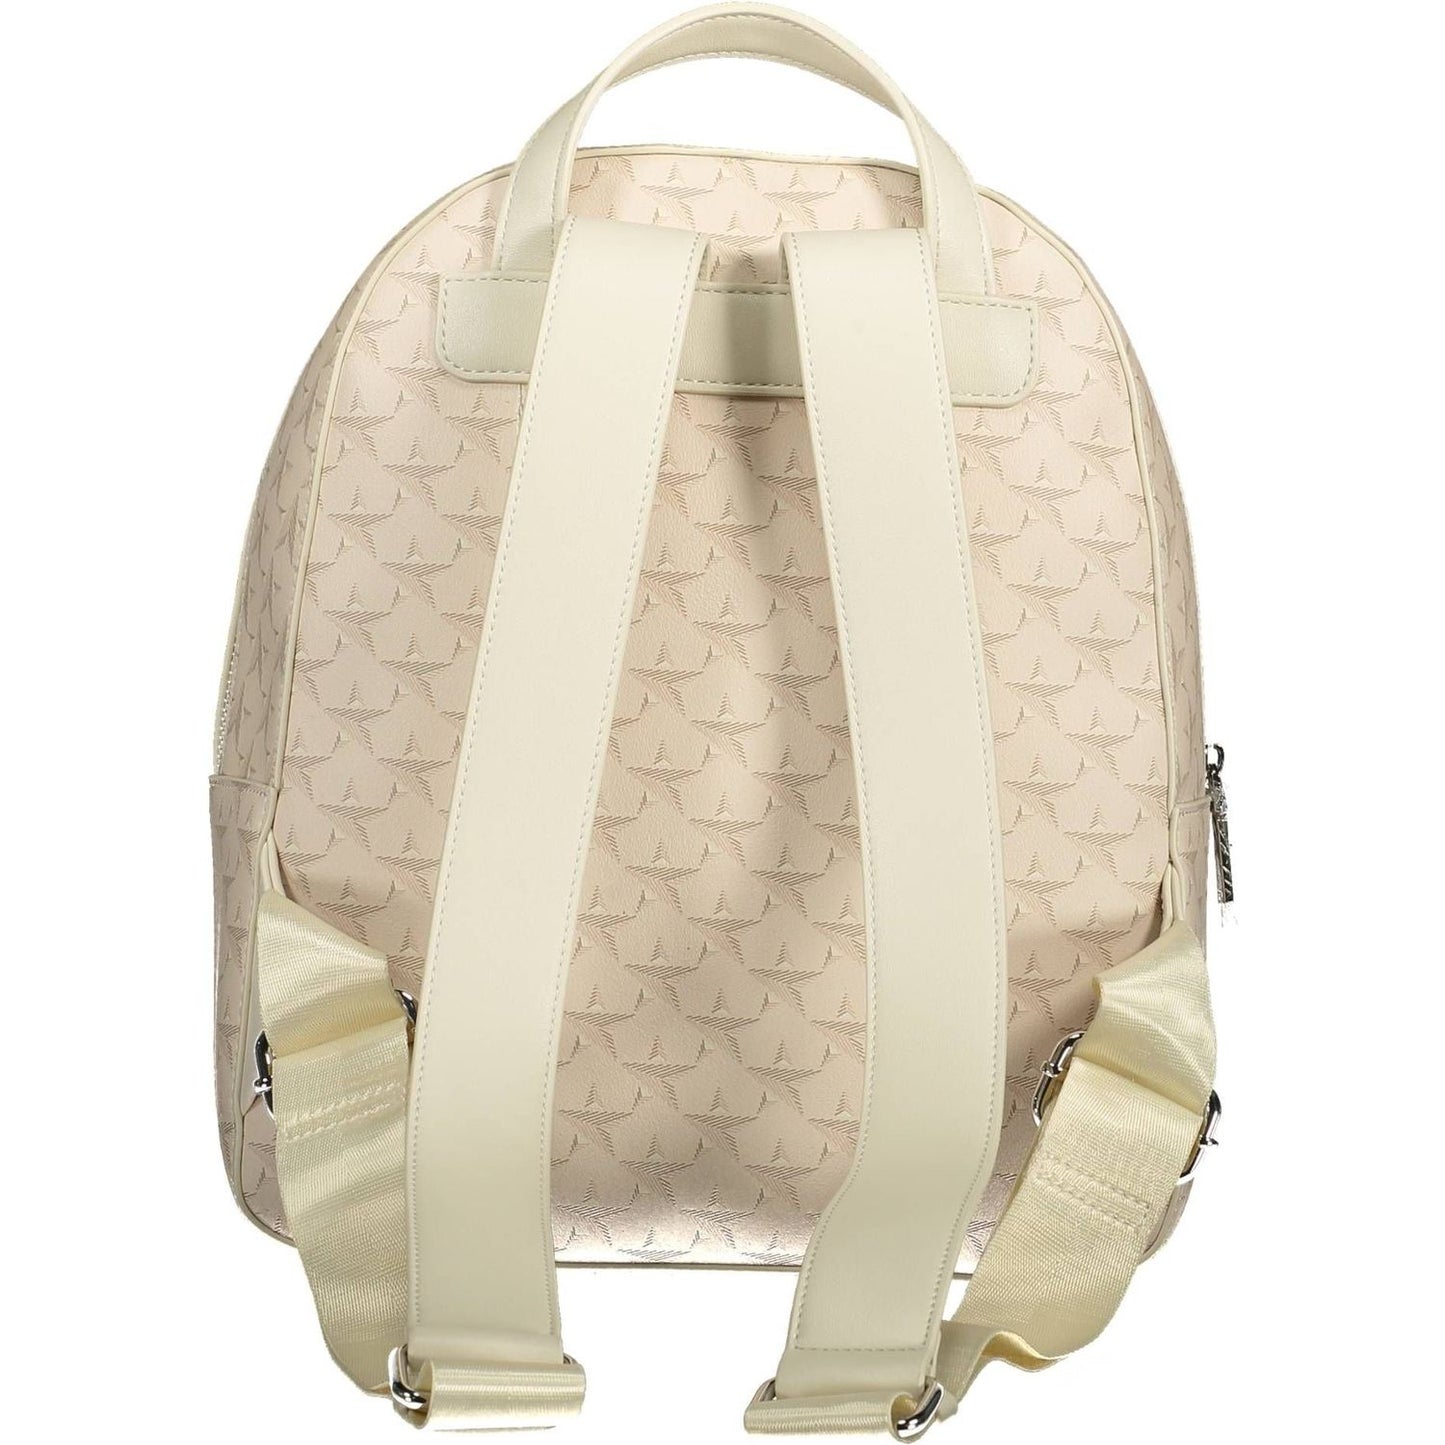 BYBLOS Elegant Beige Backpack with Contrasting Accents elegant-beige-backpack-with-contrasting-accents